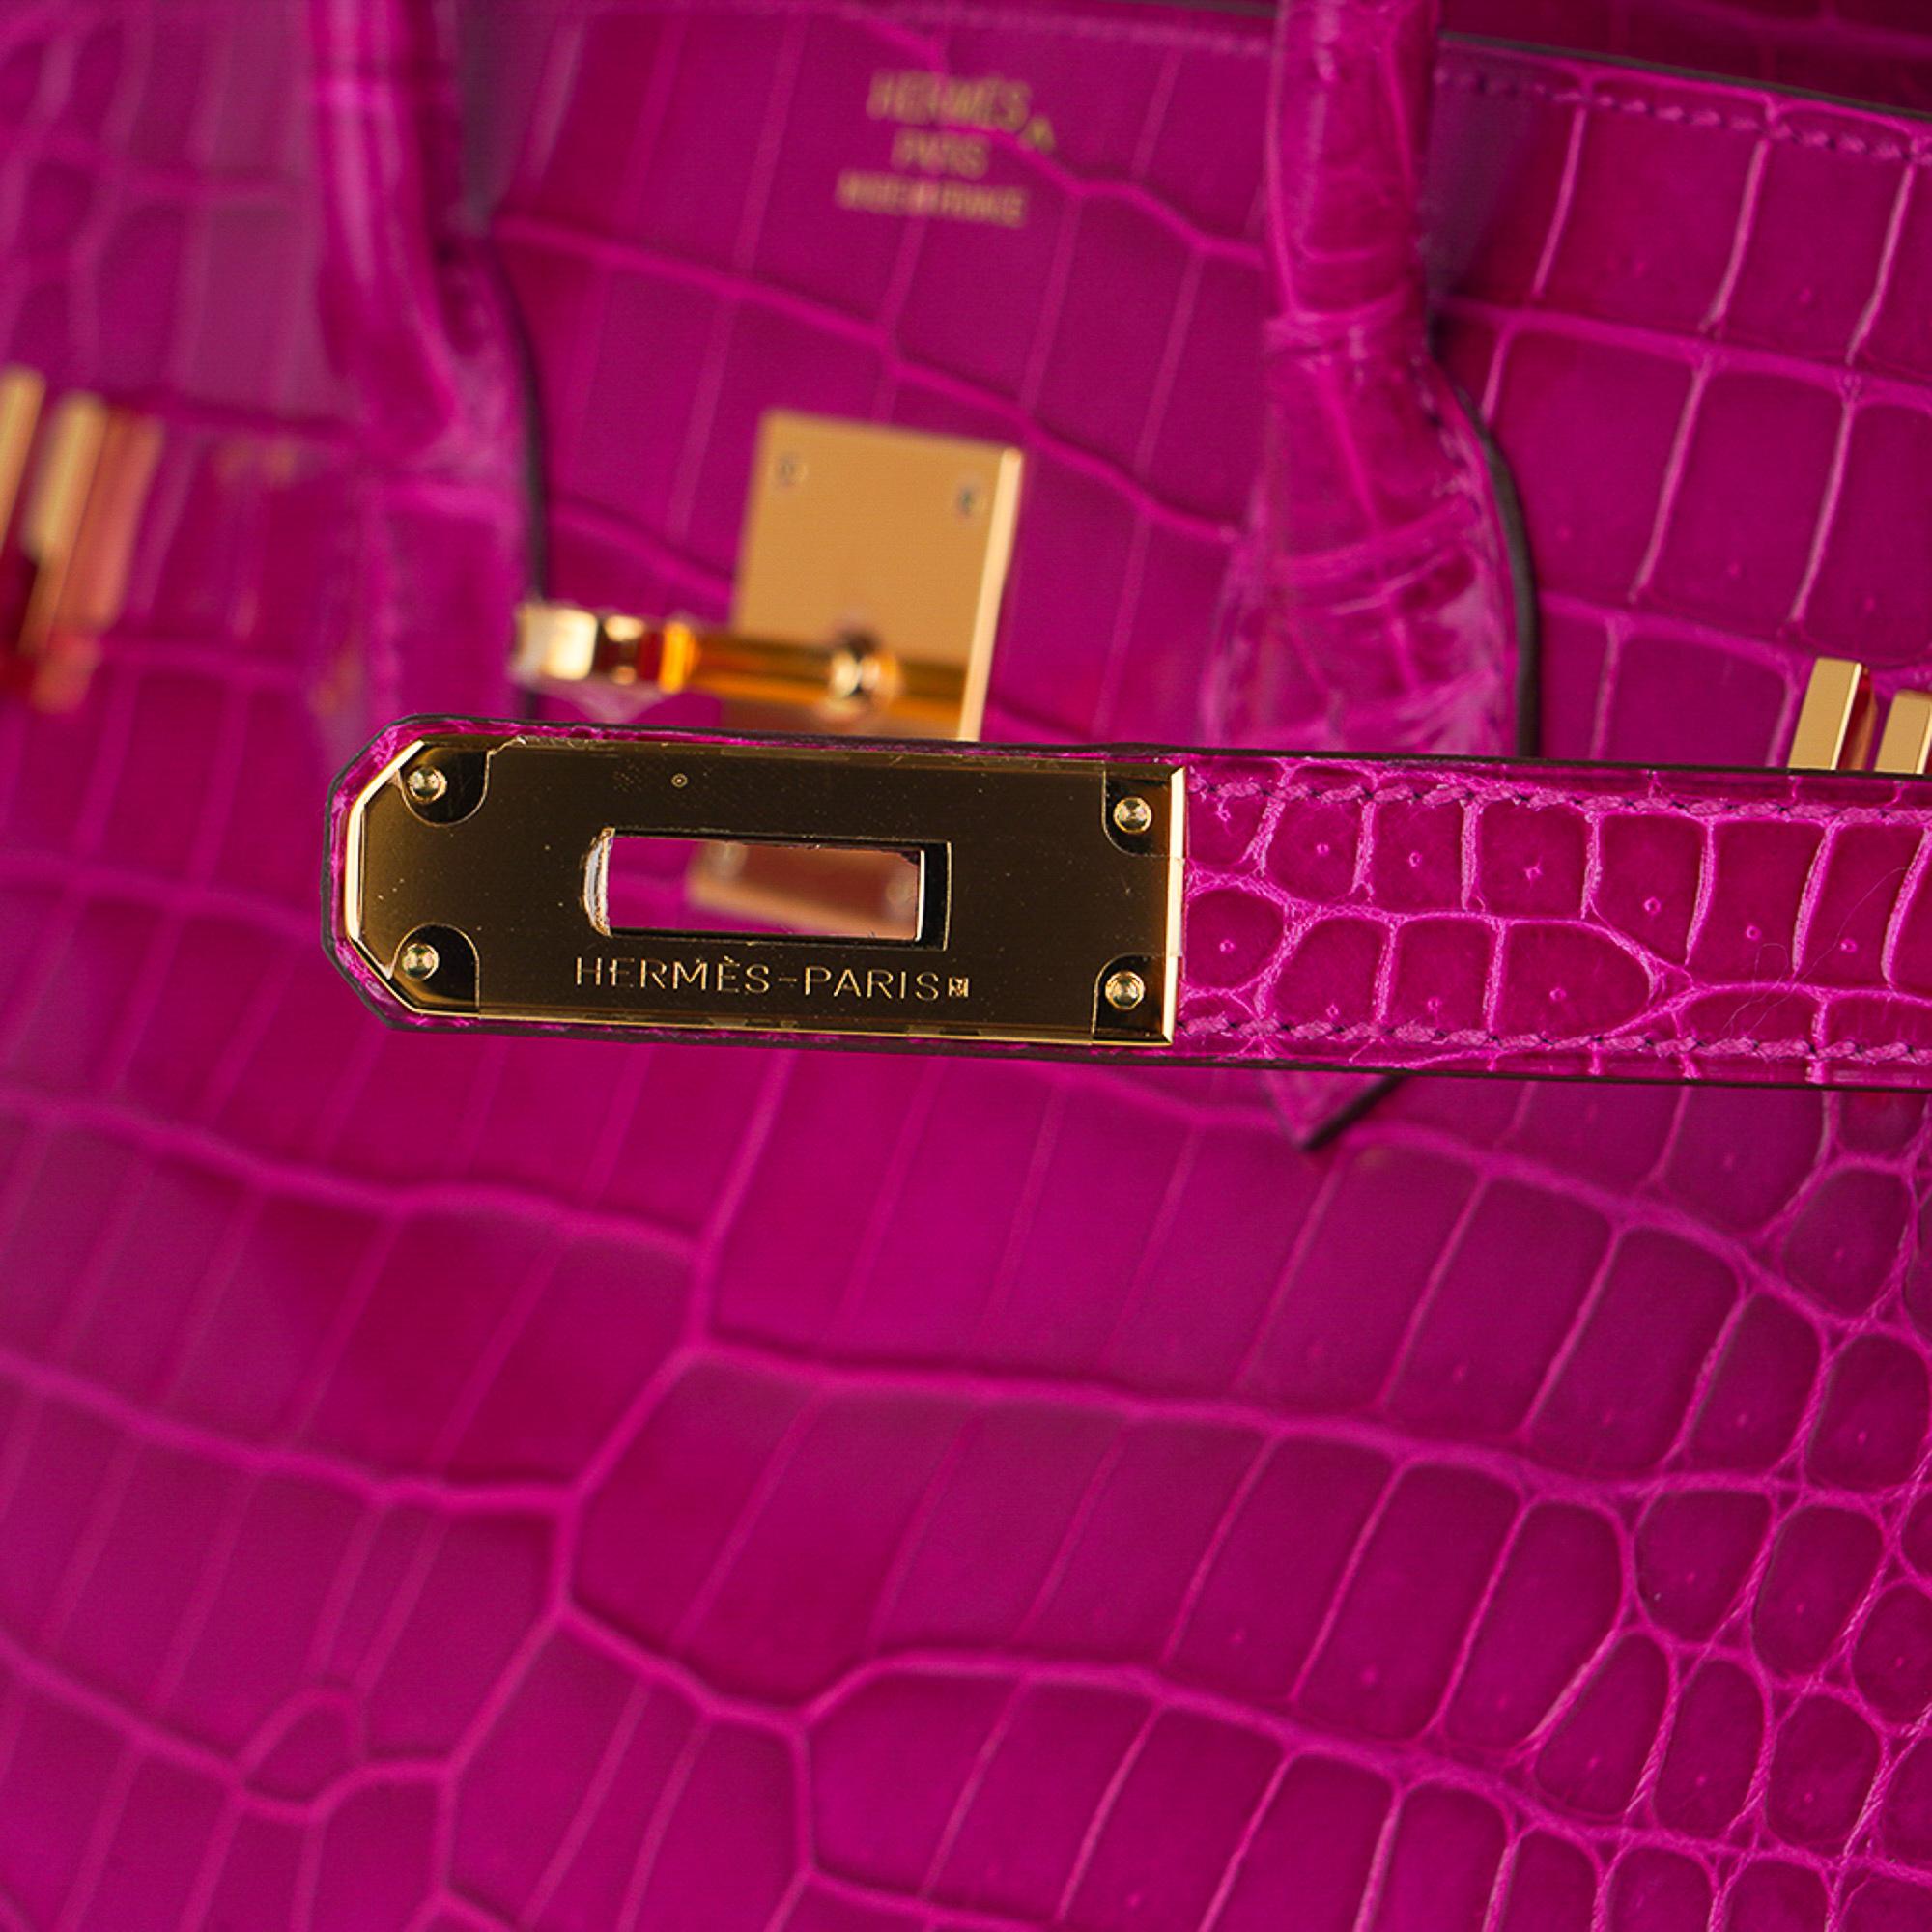 Violet Sac Hermès Birkin 35 Rose Scheherazade en crocodile Porosus finitions métalliques dorées en vente